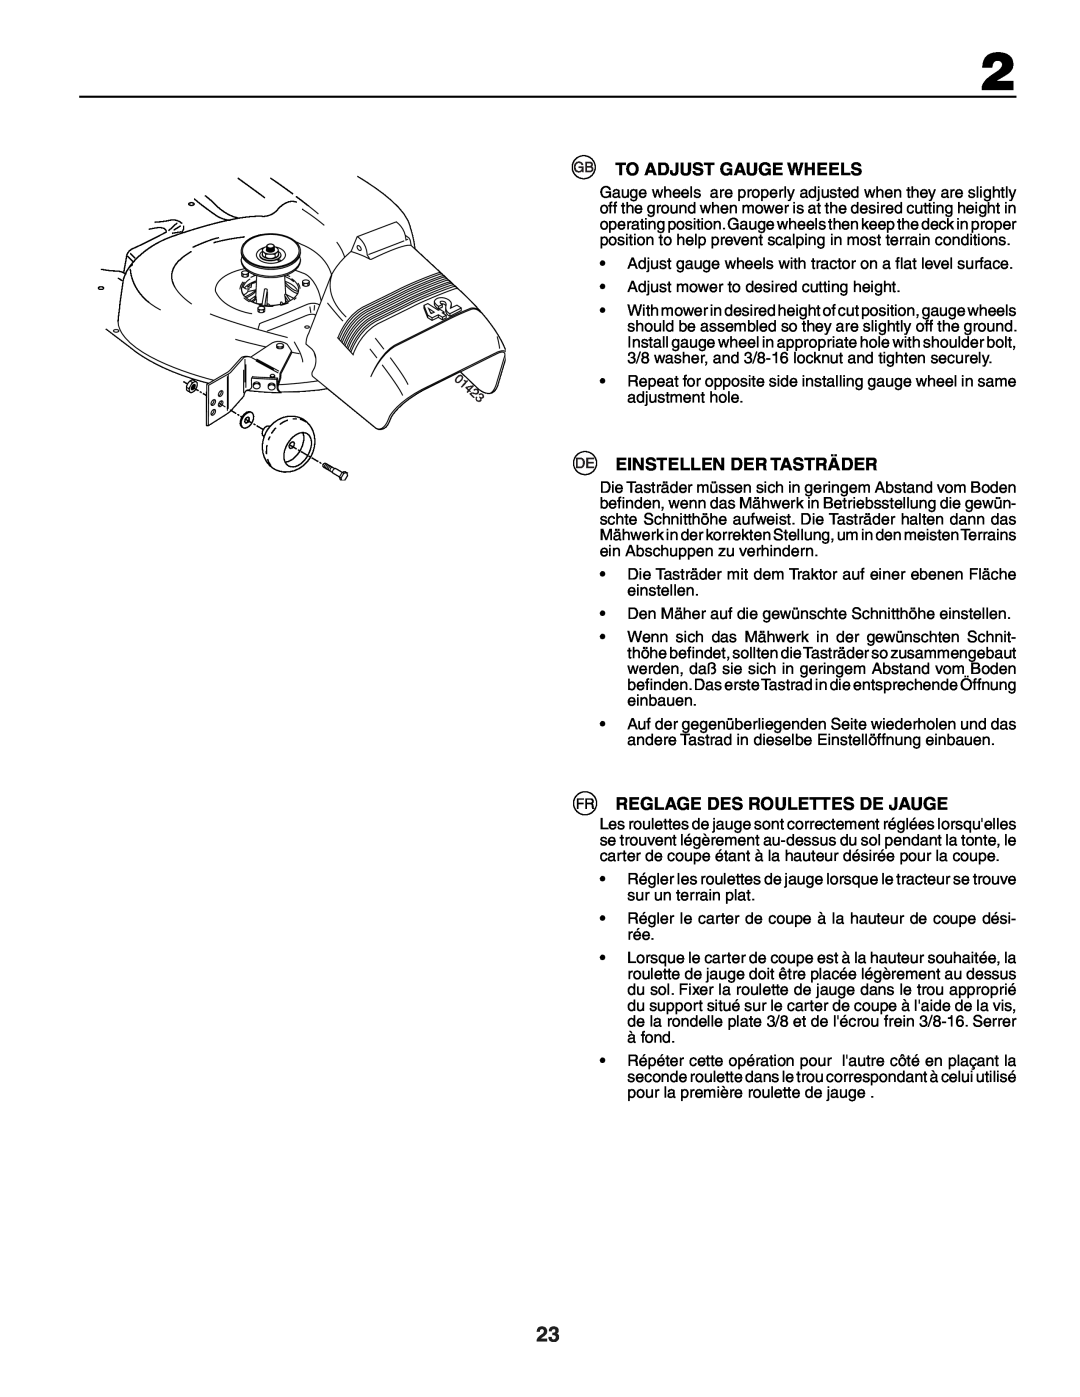 Husqvarna YTH150XP instruction manual To Adjust Gauge Wheels, Einstellen Der Tasträder, Reglage Des Roulettes De Jauge 